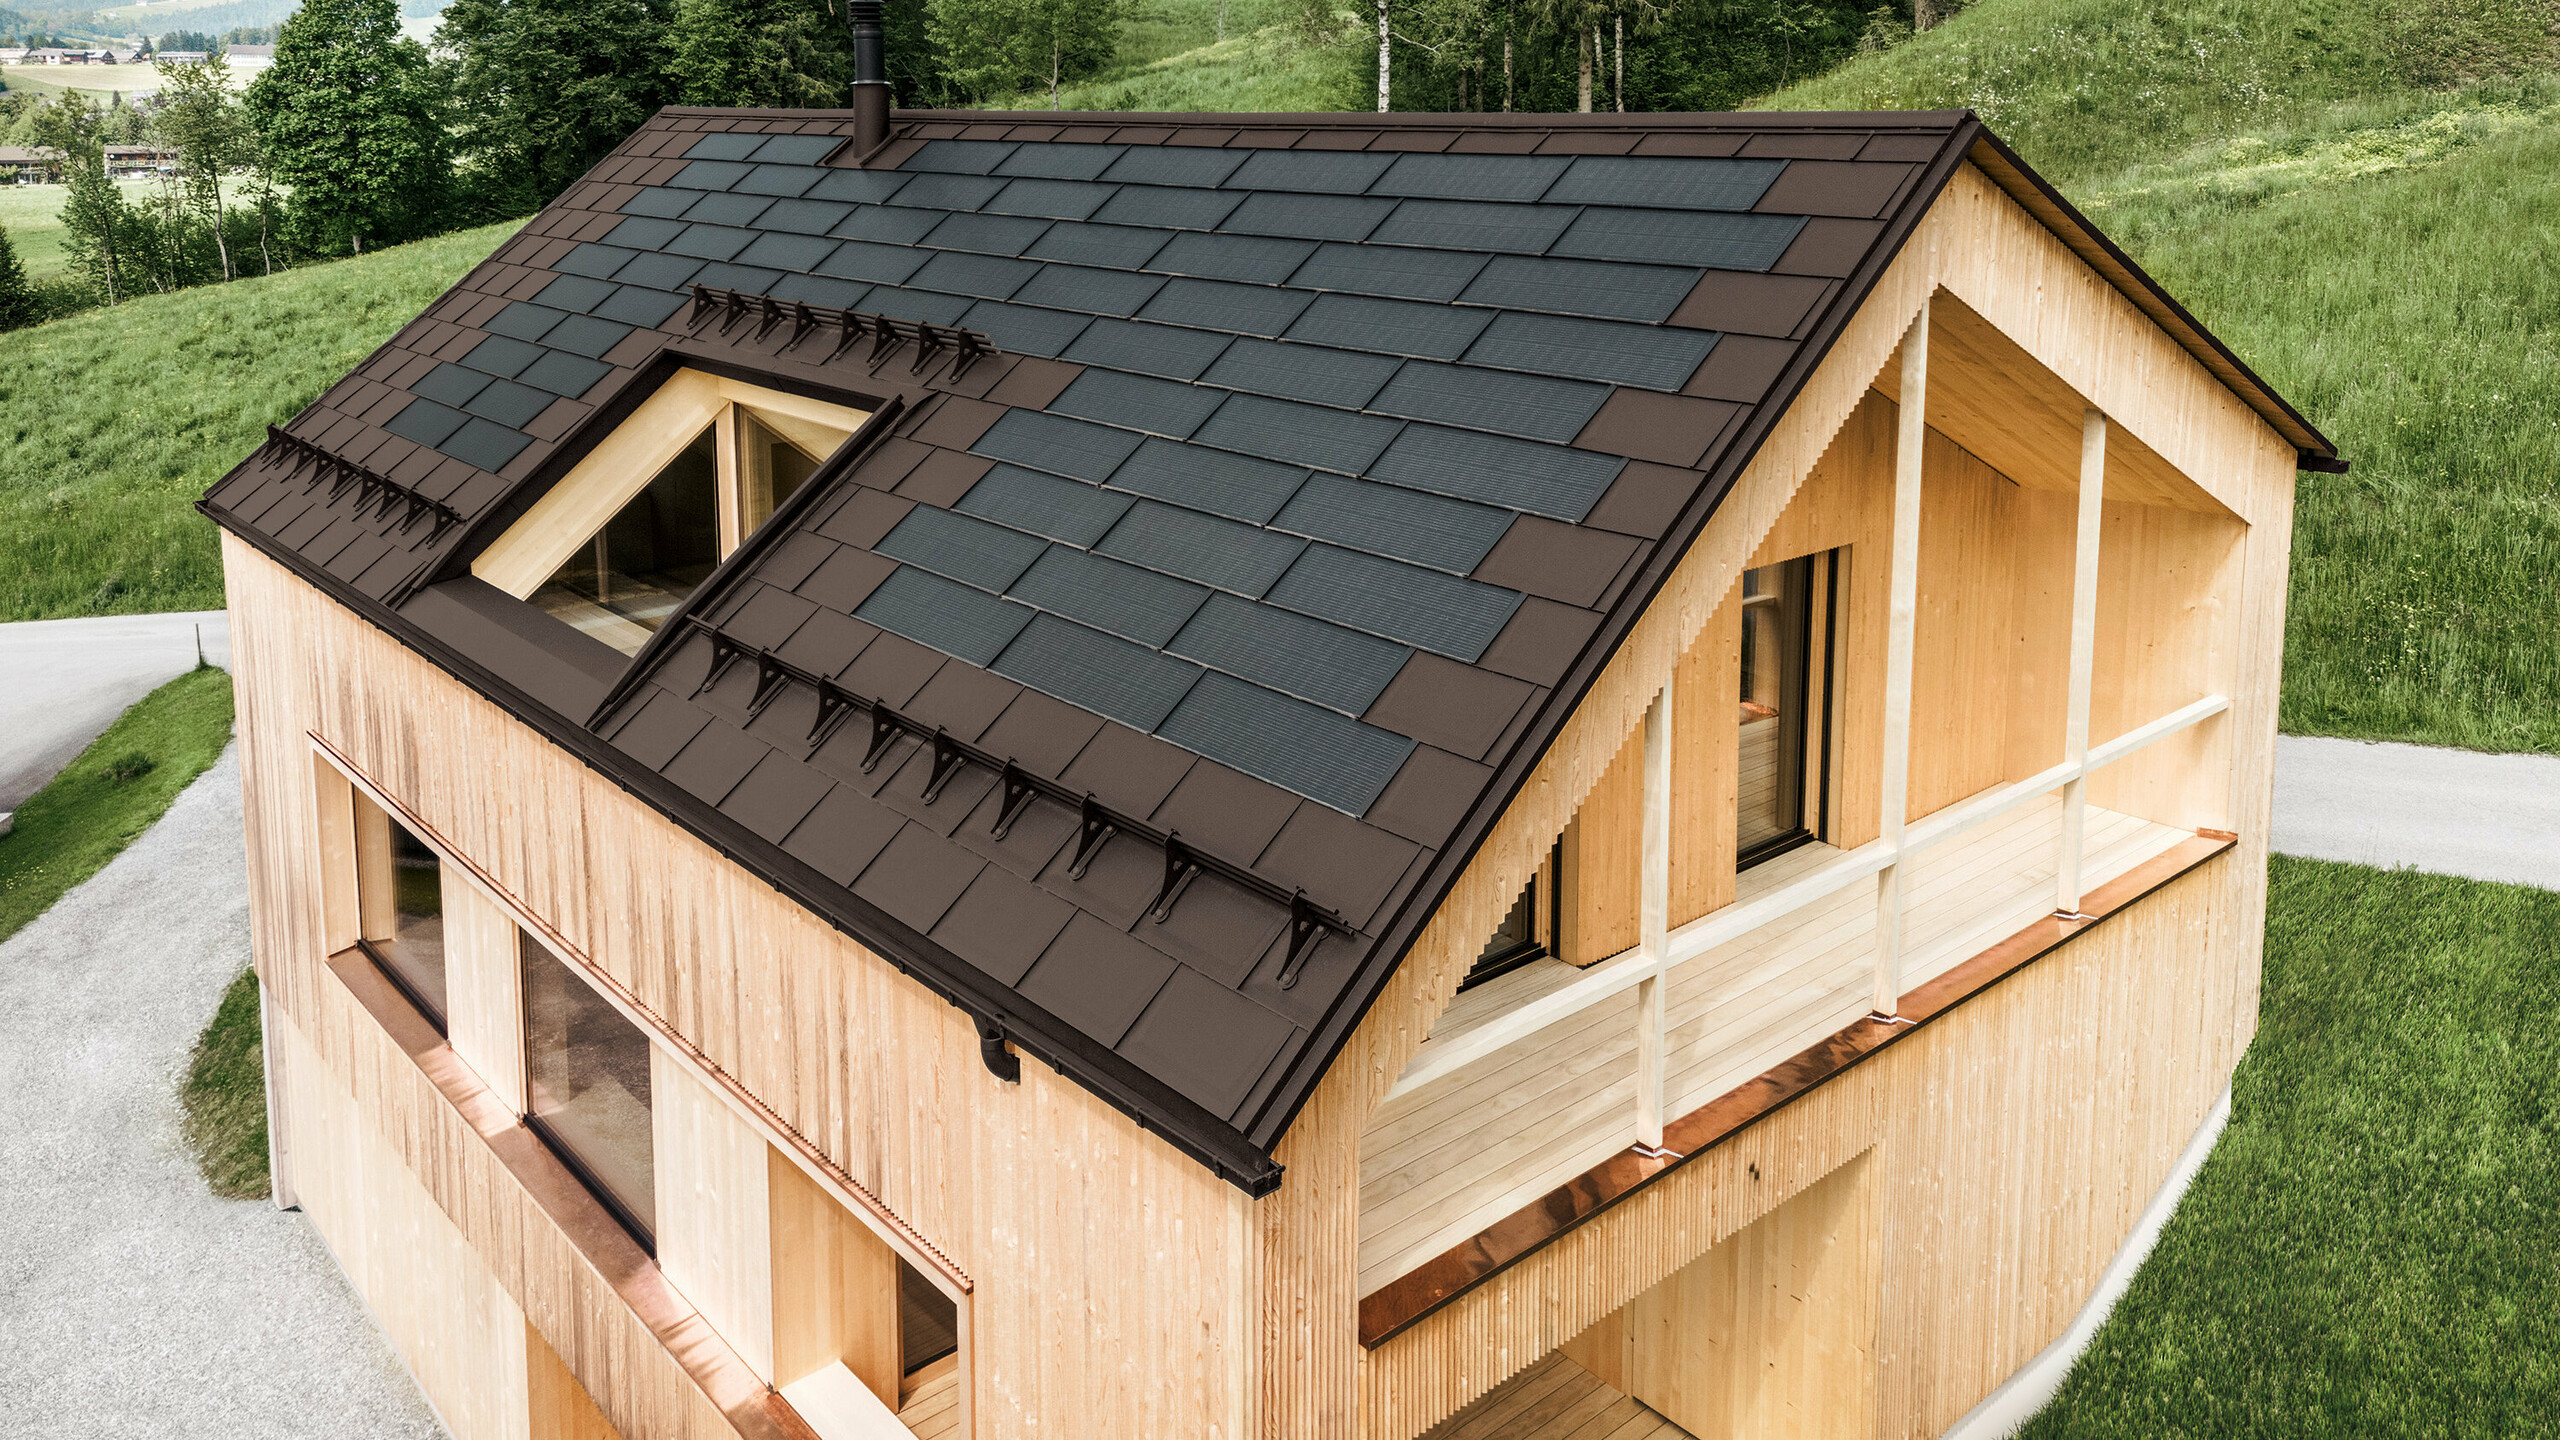 Einfamilienhaus im österreichischen Ort Egg mit der PREFA Solardachplatte und der Dachplatte R.16 in Nussbraun, kombiniert mit einer Holzfassade